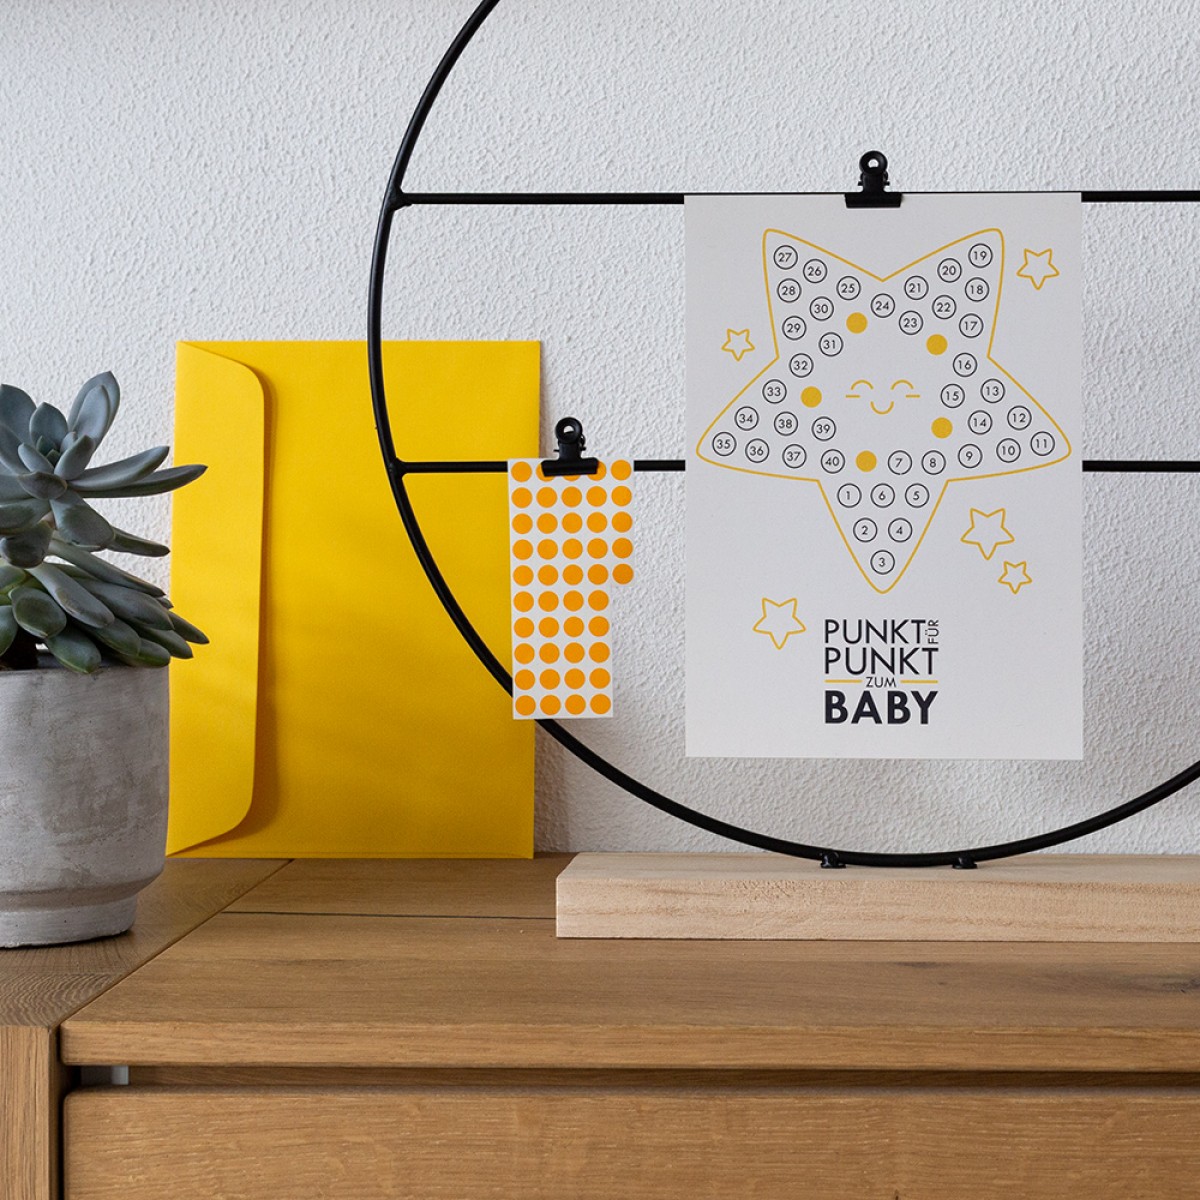 TYPOP 5-teiliges Set Babykalender "Hallo kleiner Stern" inkl. Umschlag, Minikarte + Umschlag und Klebepunkte